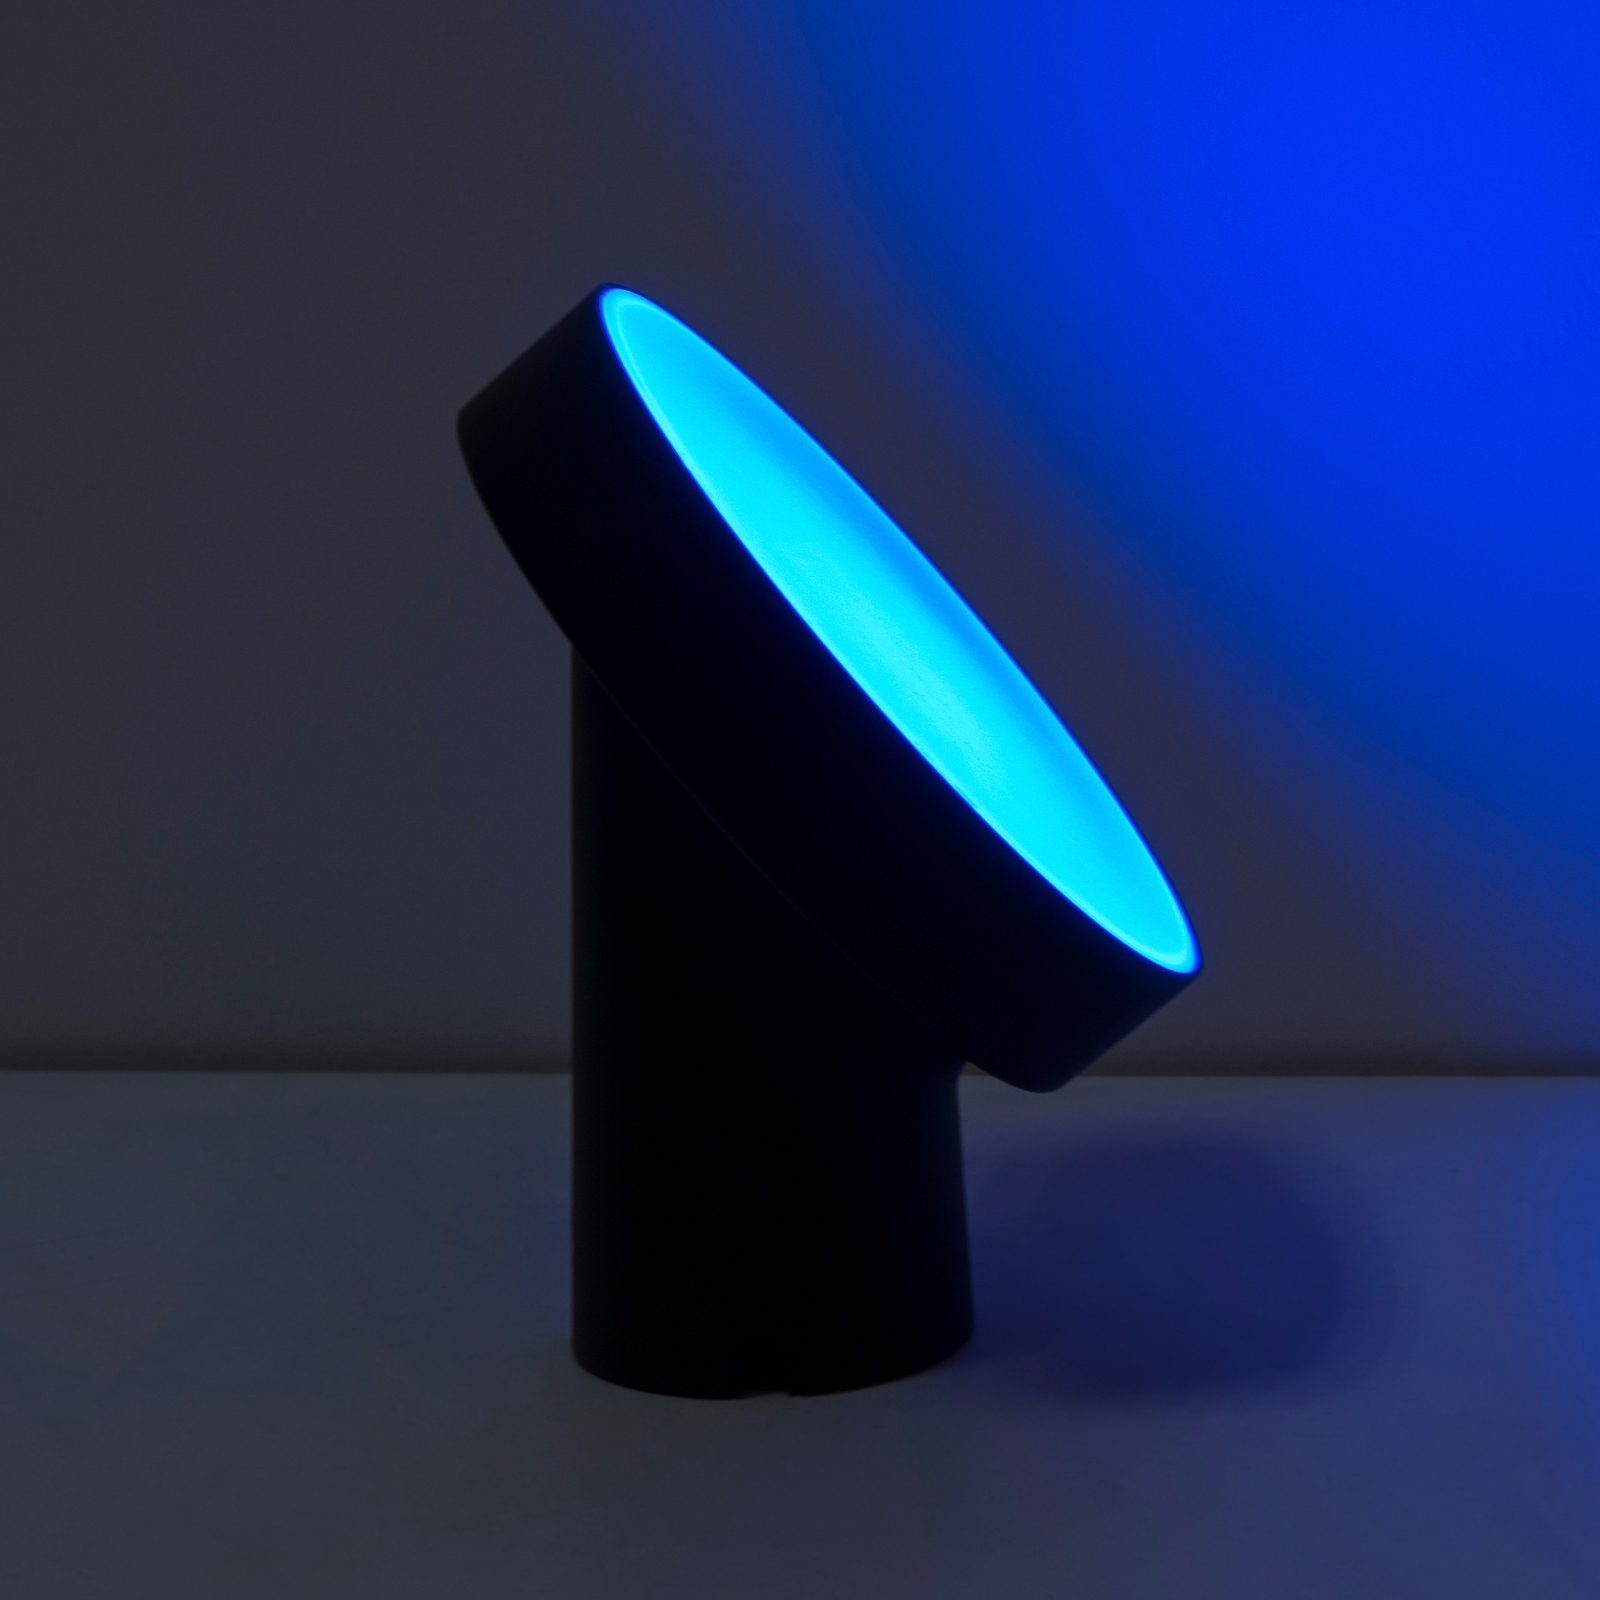 Stolová LED lampa Moa s funkciou RGBW, čierna